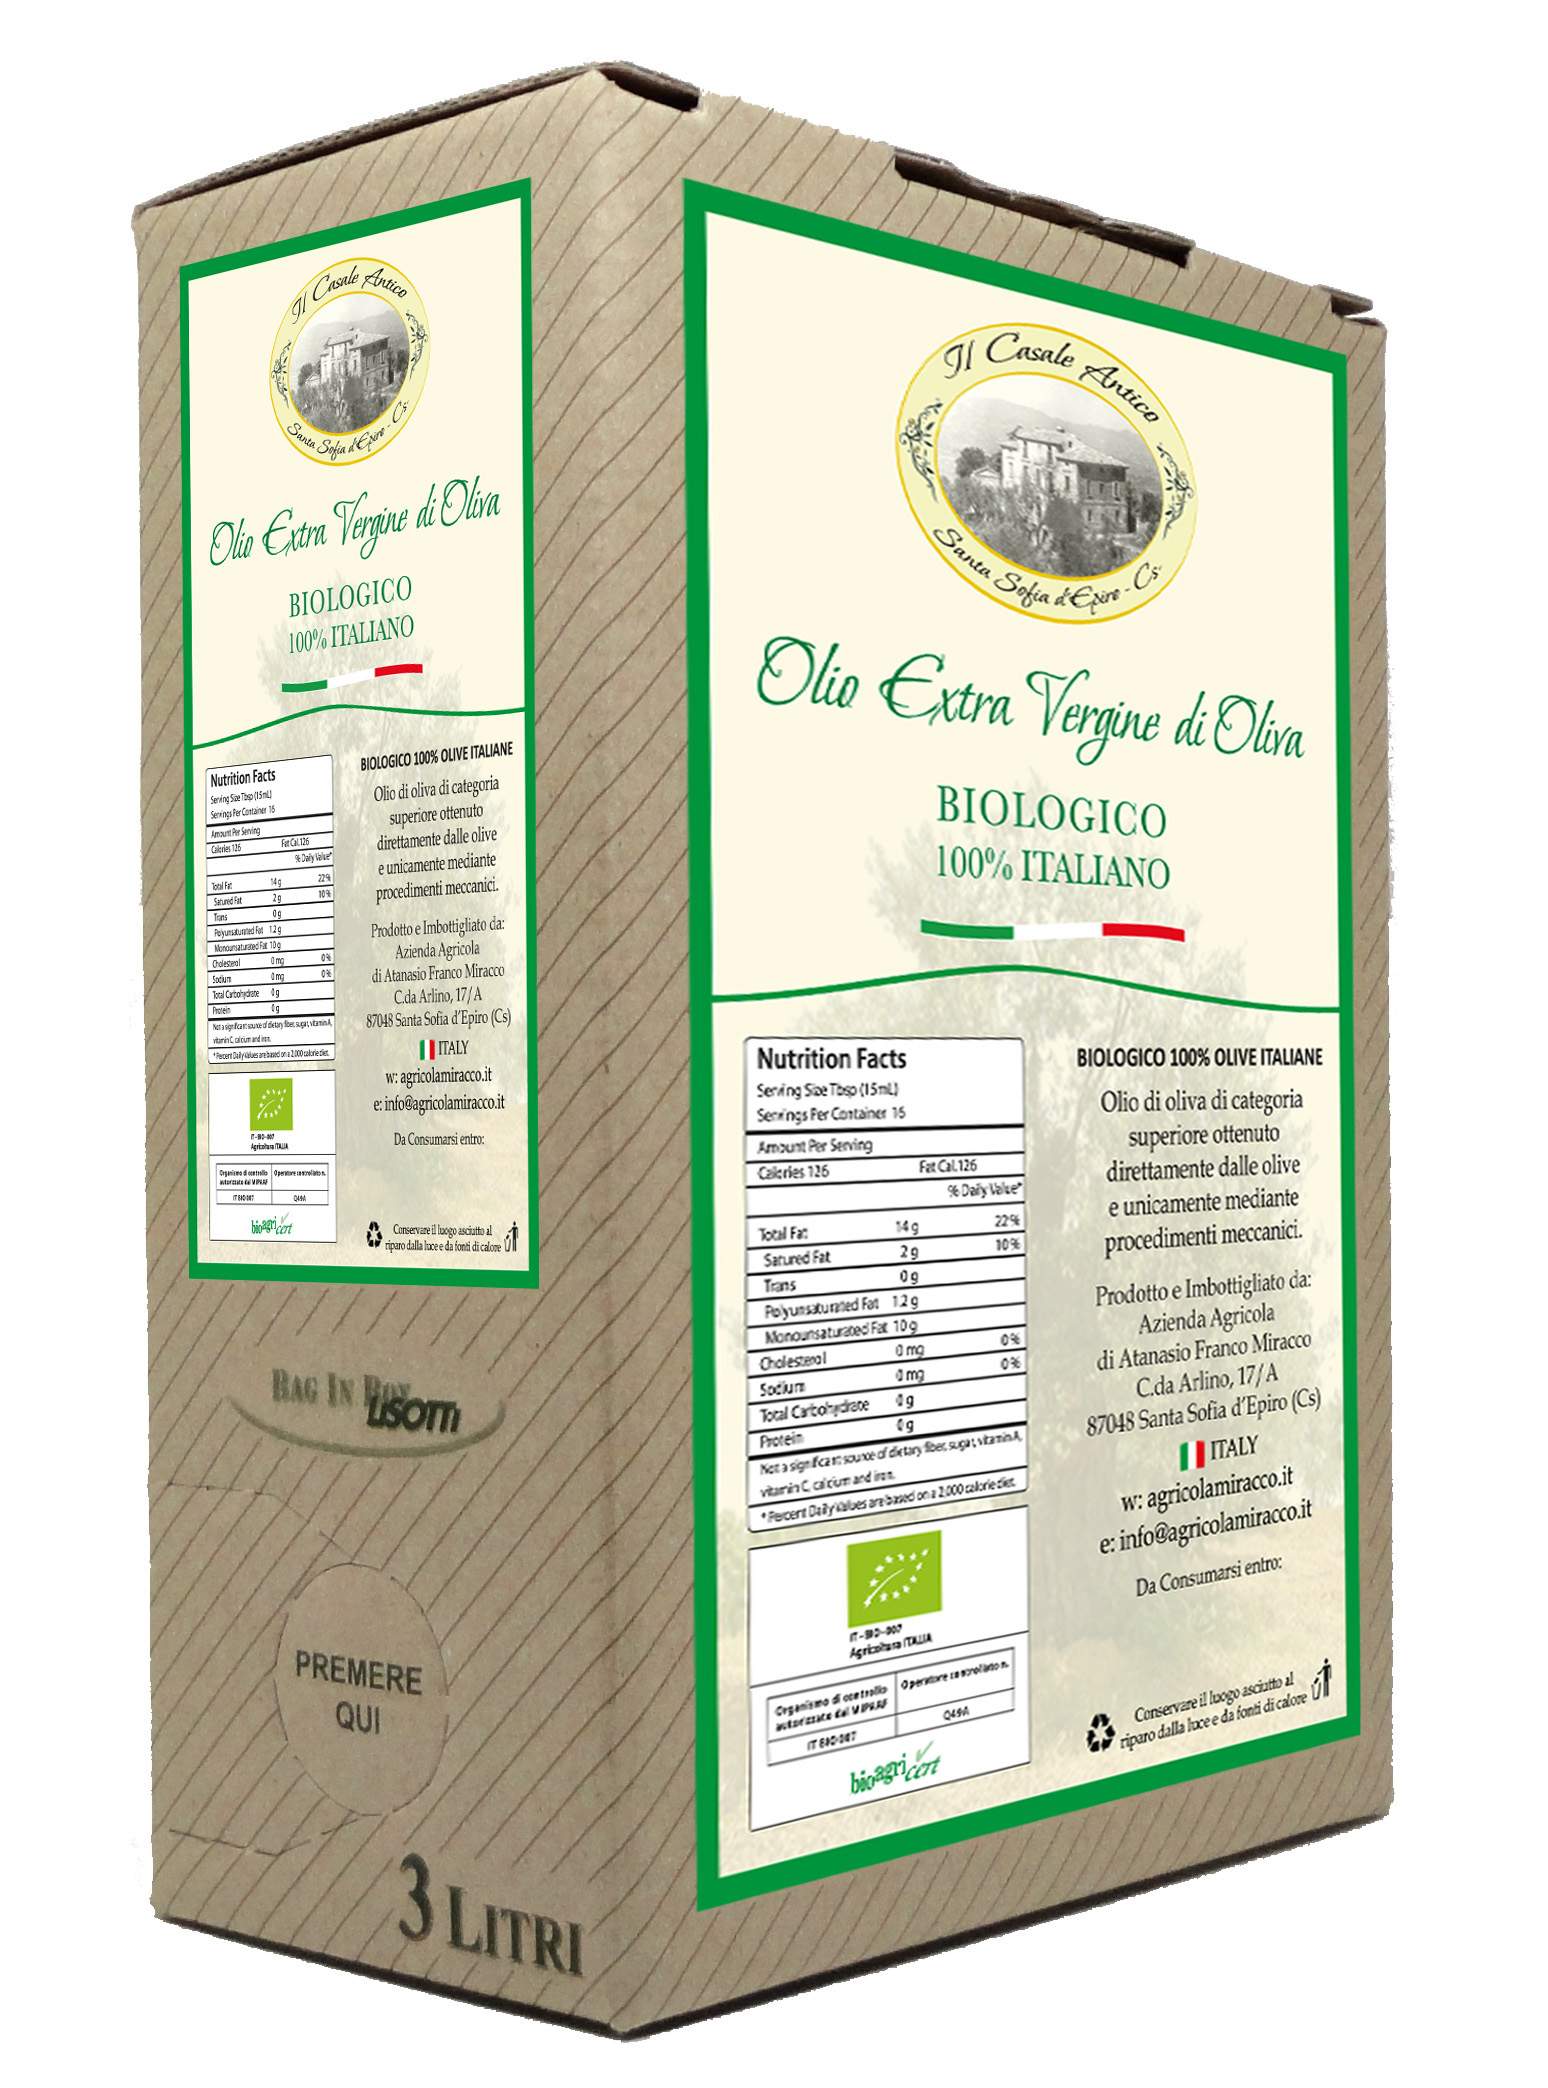 Bag in Box "Il Casale Antico" 3 Lt. Olio Extravergine di Oliva Biologico 100% Italiano